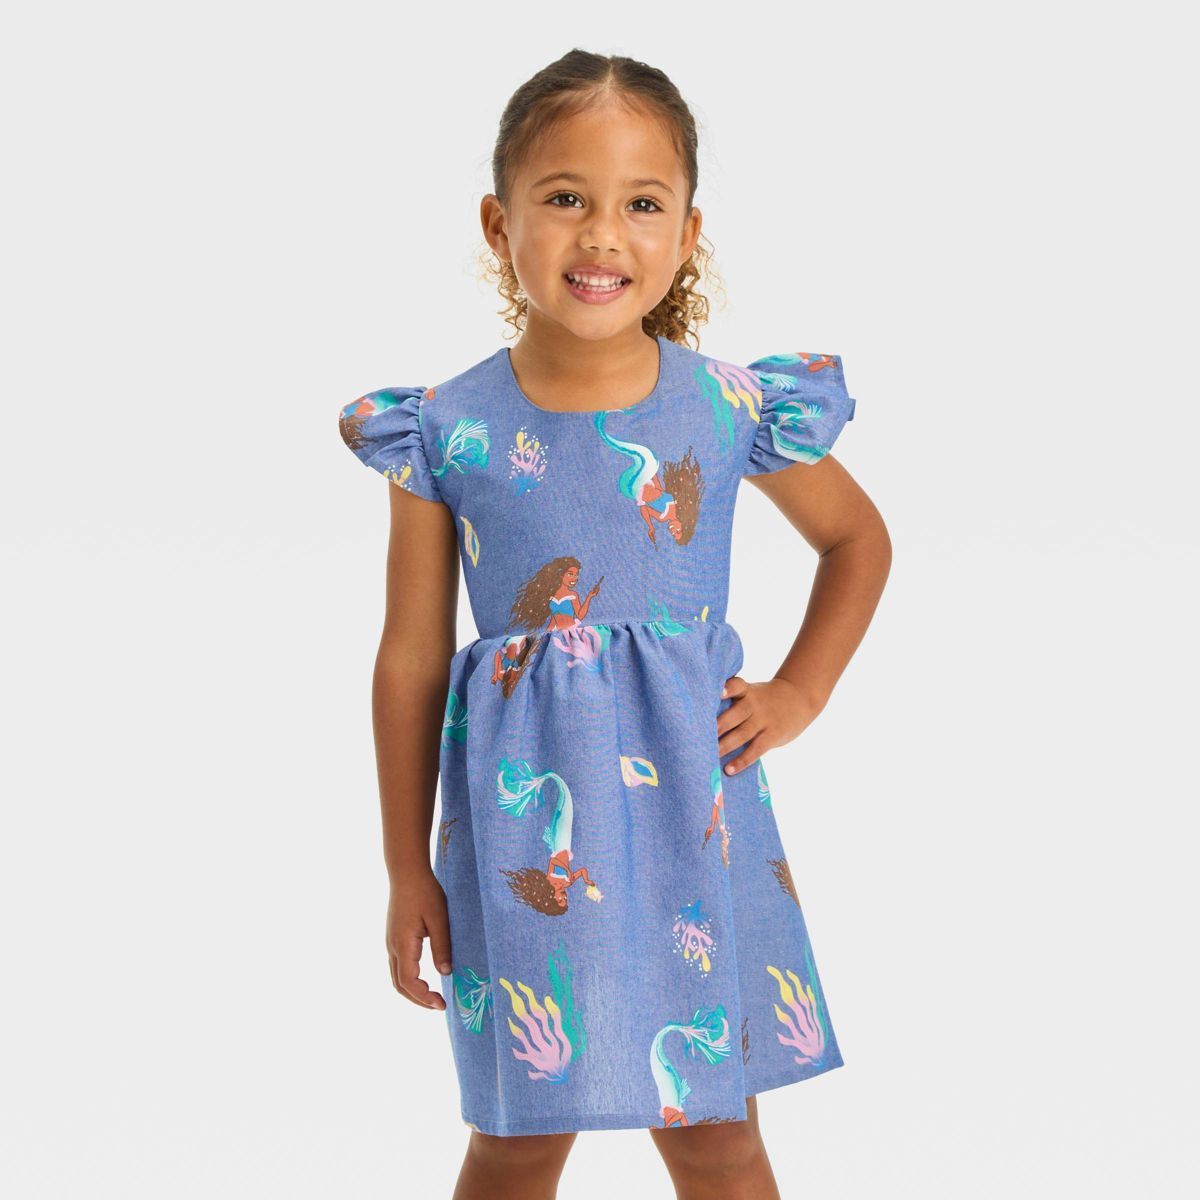 Toddler Girls' Disney Princess Empire Waist Dress - Light Blue | Target